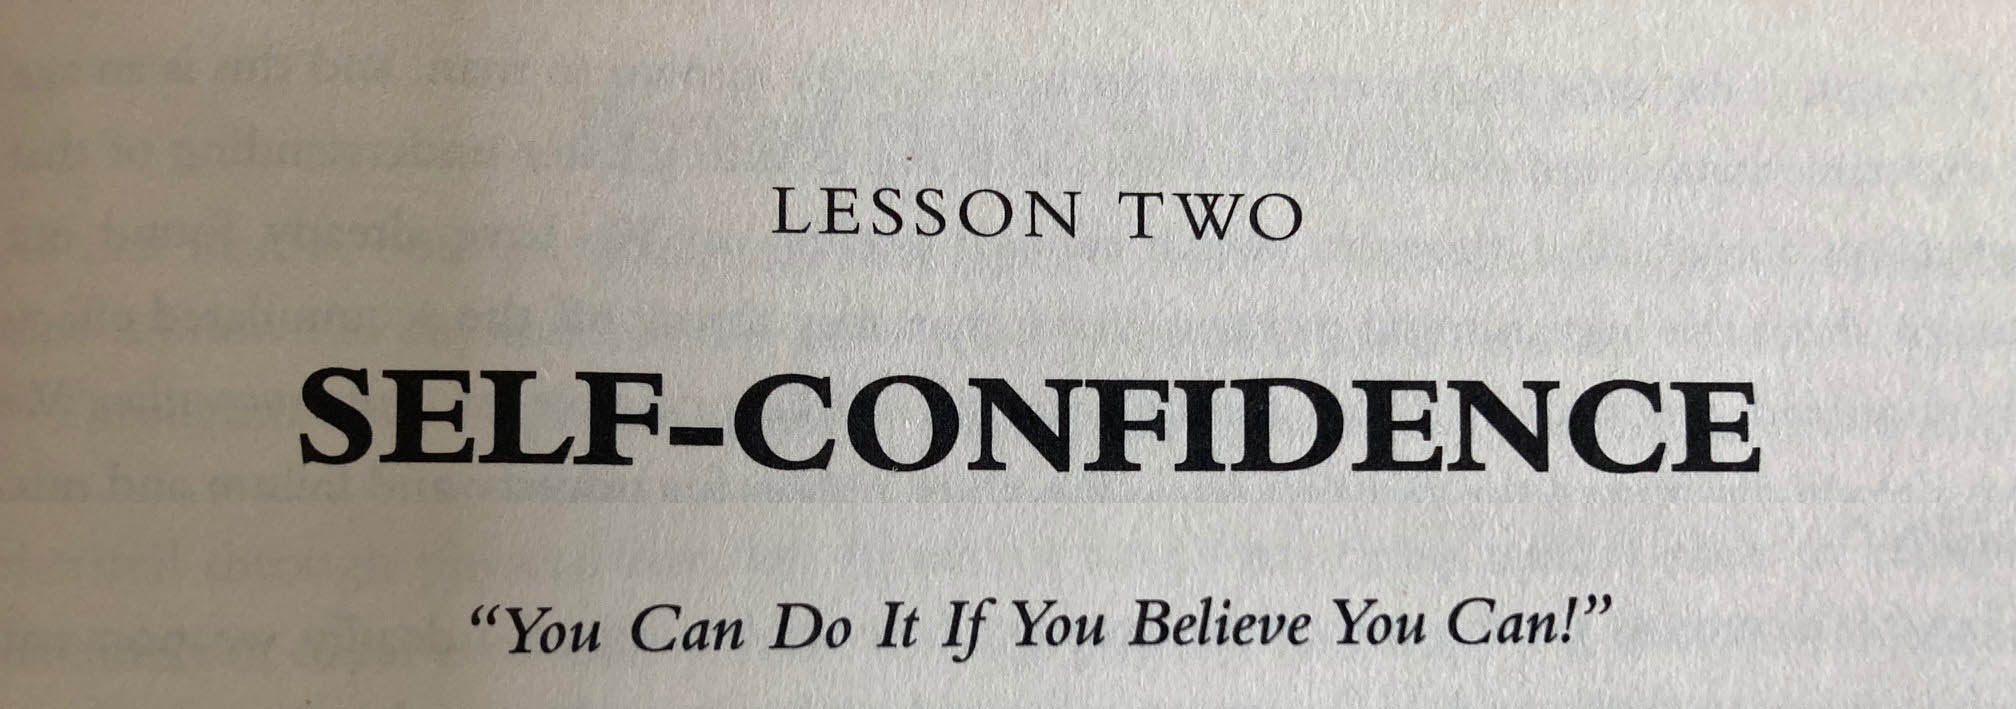 Das Gesetz des Erfolges - Selbstvertrauen - Sie können es schaffen, wenn Sie daran glauben!
"Sie können ihre Ziele erreichen, wenn Sie daran glauben!"